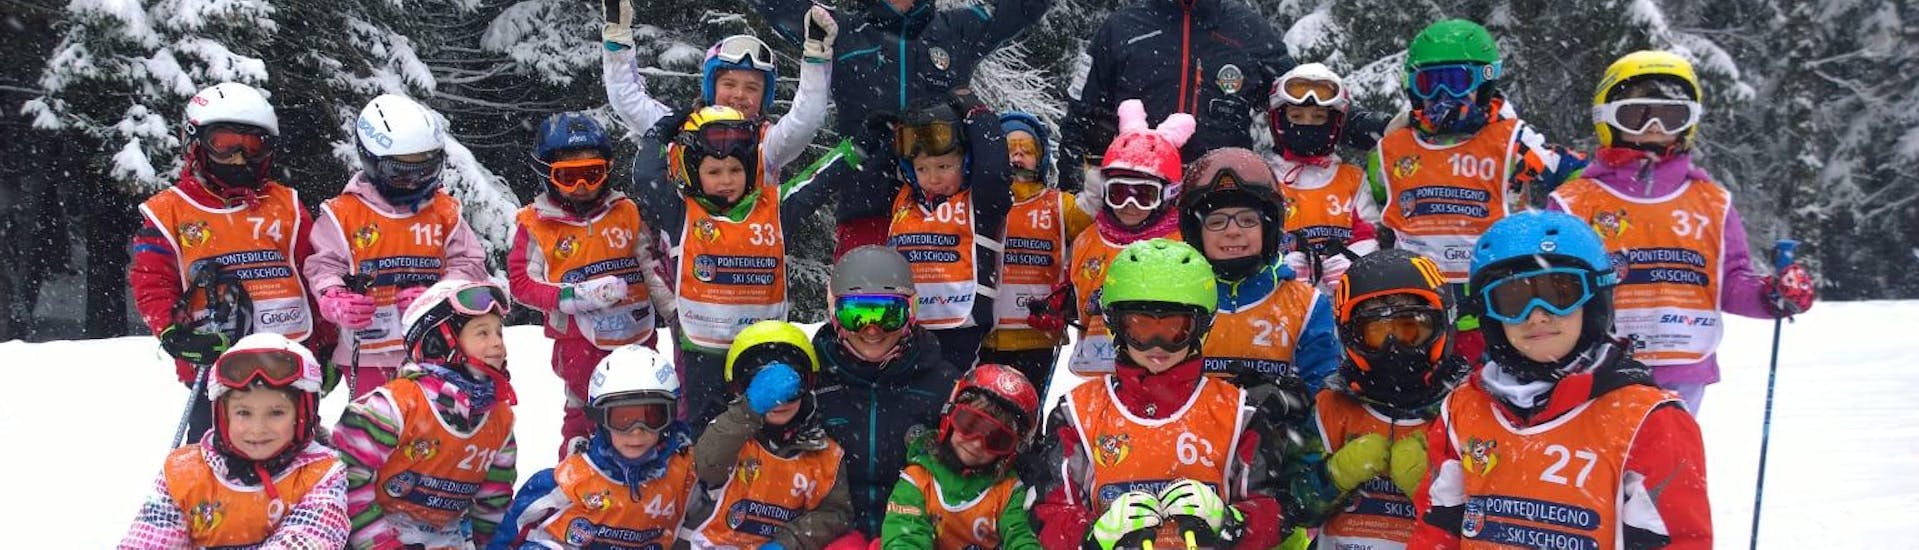 Eine große Gruppe von Kindern genießt ihren Kinder-Skikurs mit der Skischule Pontedilegno.